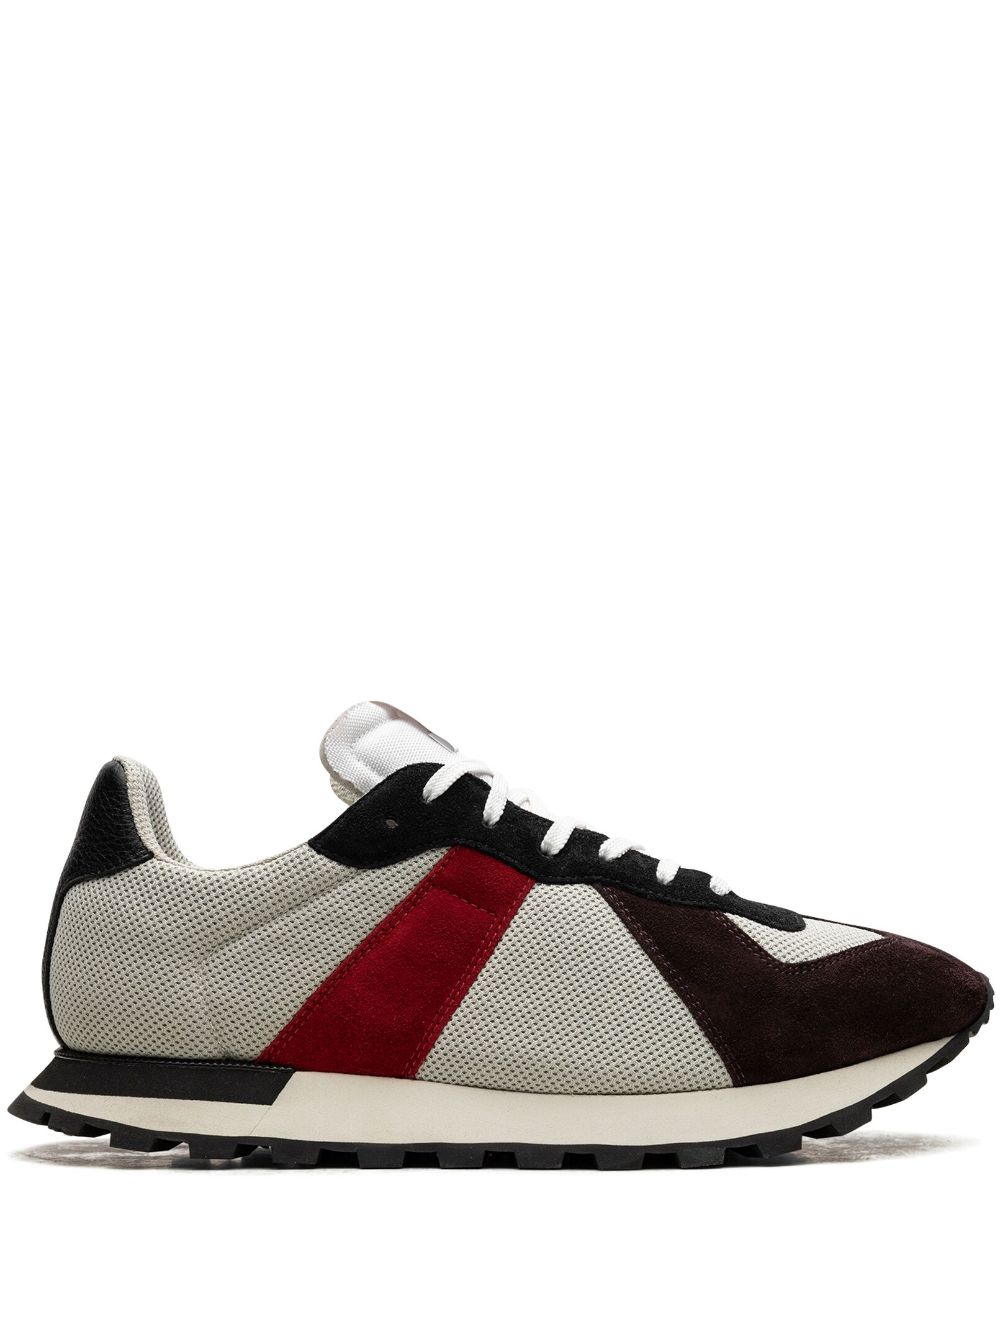 Maison Margiela Retro Runner "white/black/red" Sneakers In Neutrals